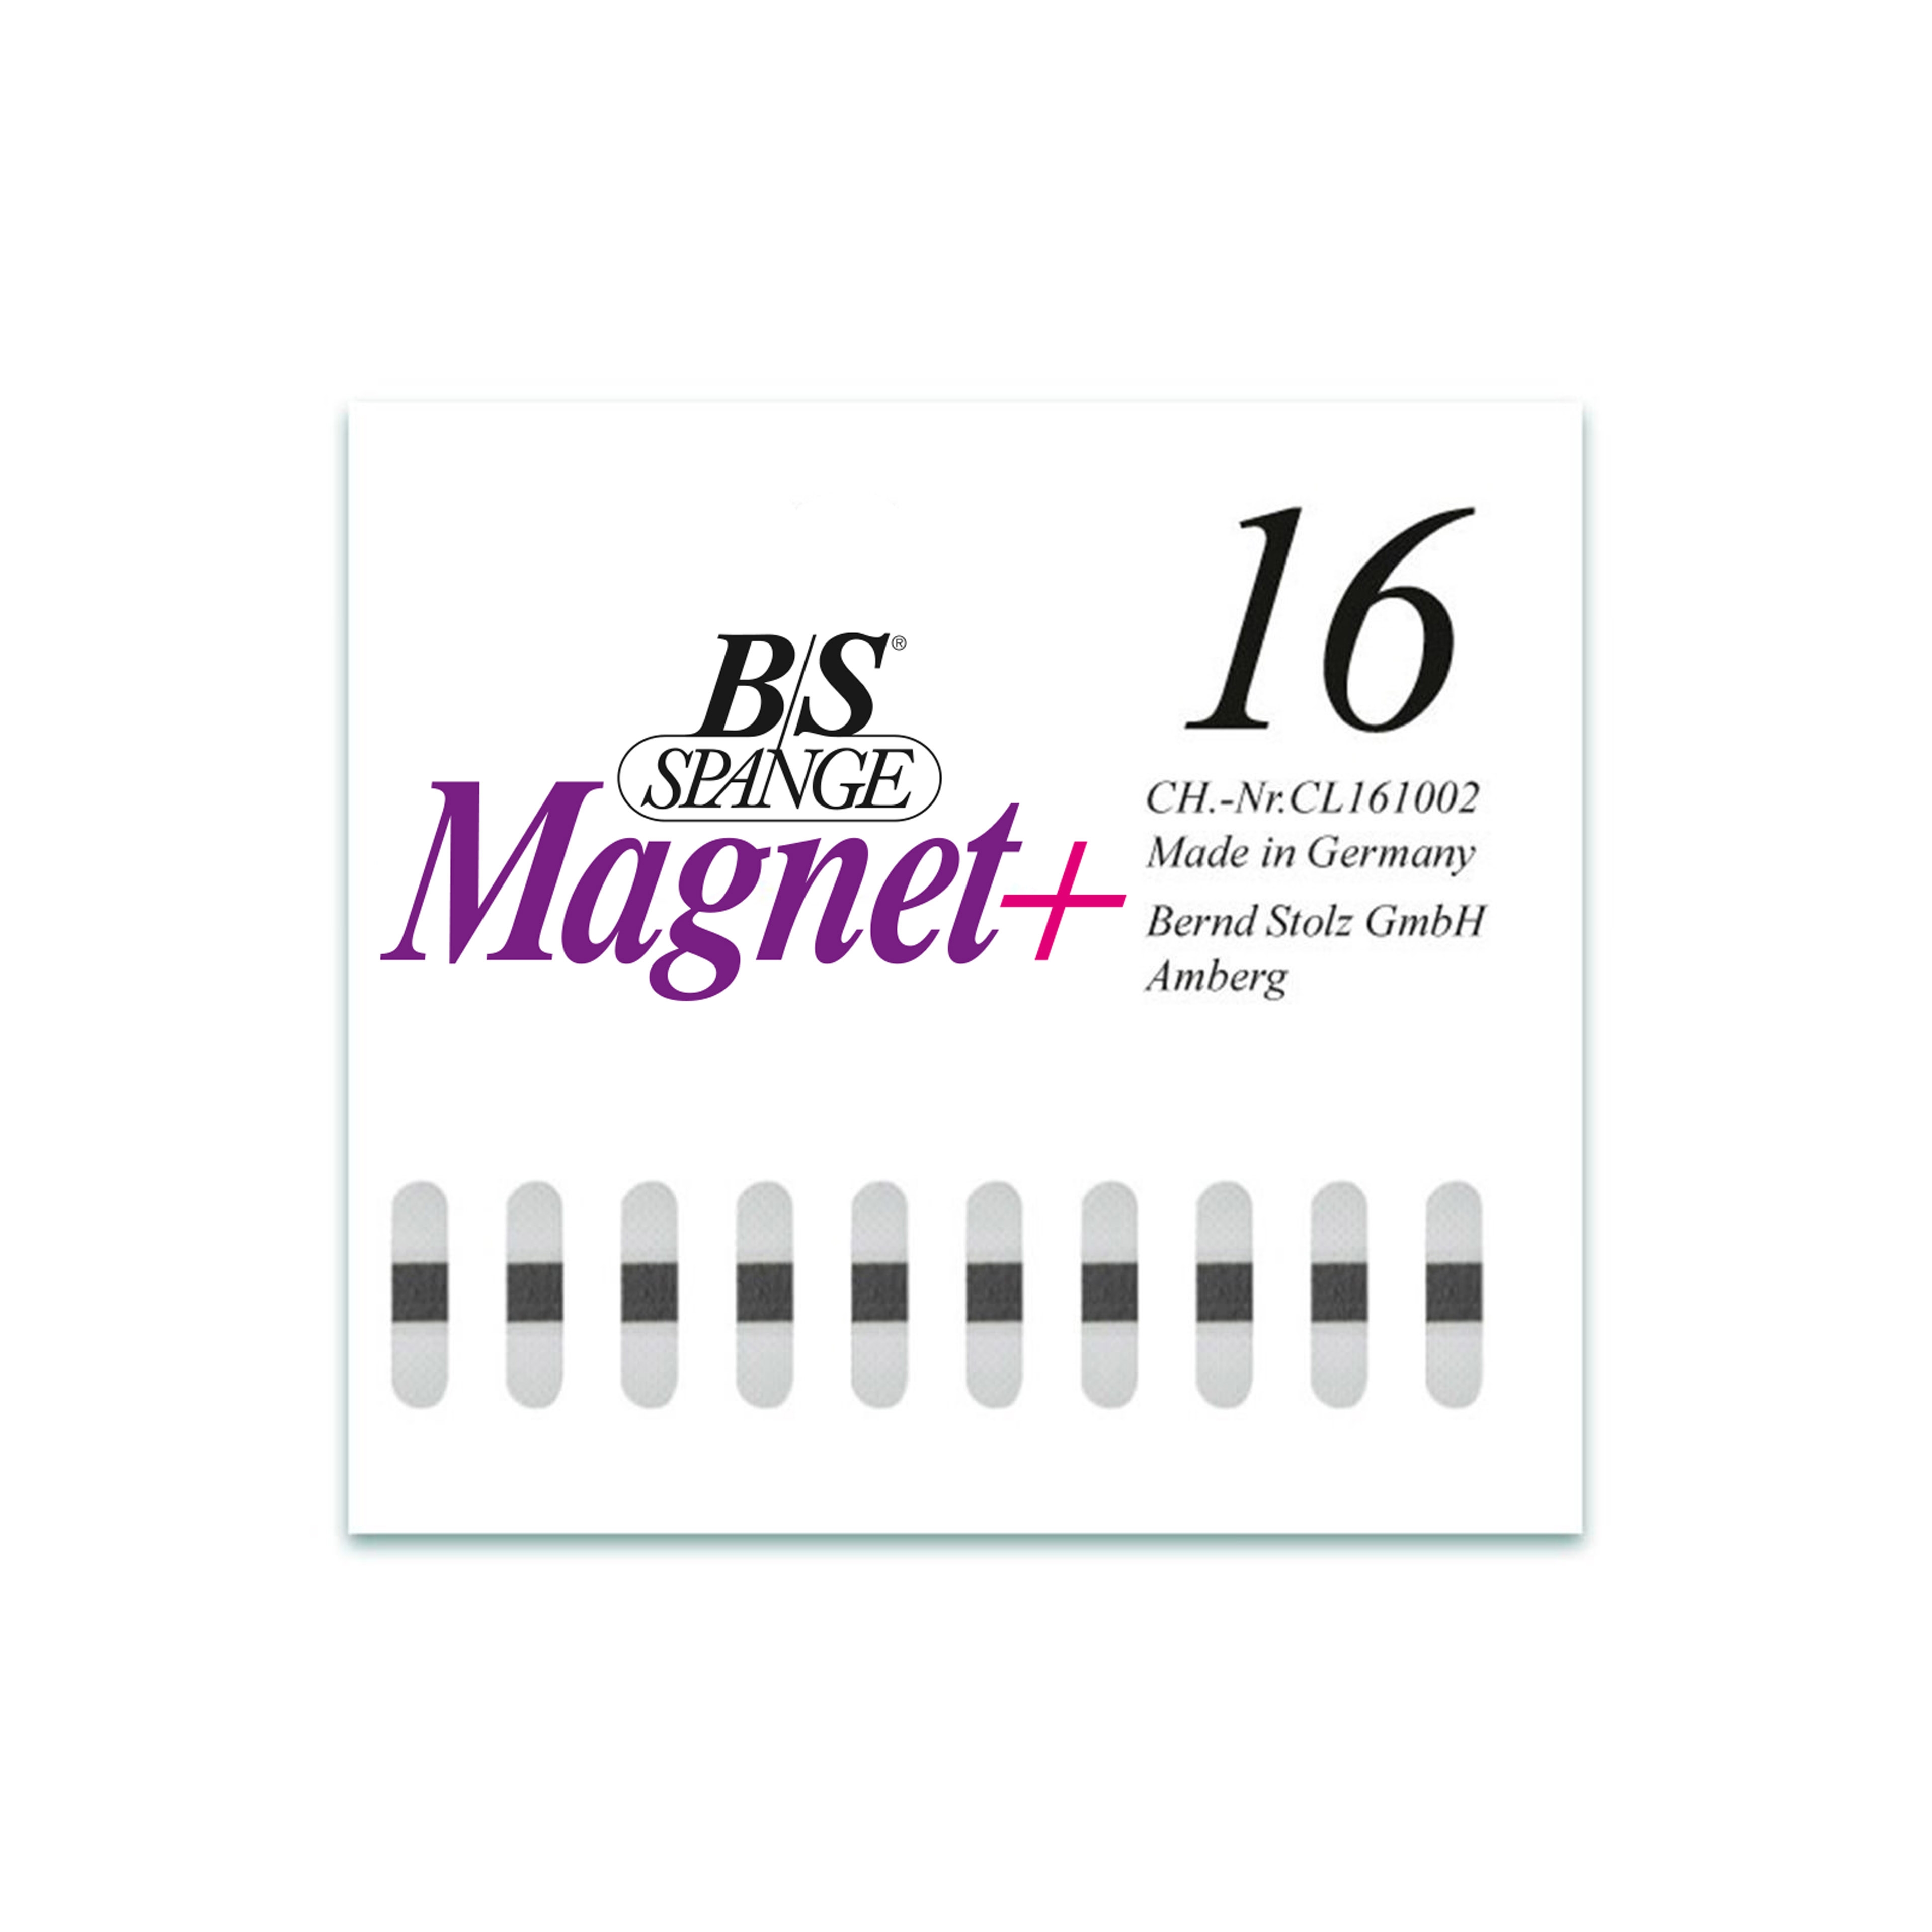 B/S Spange Magnet+ | Länge 16 Breite 4 mm 10 Stück